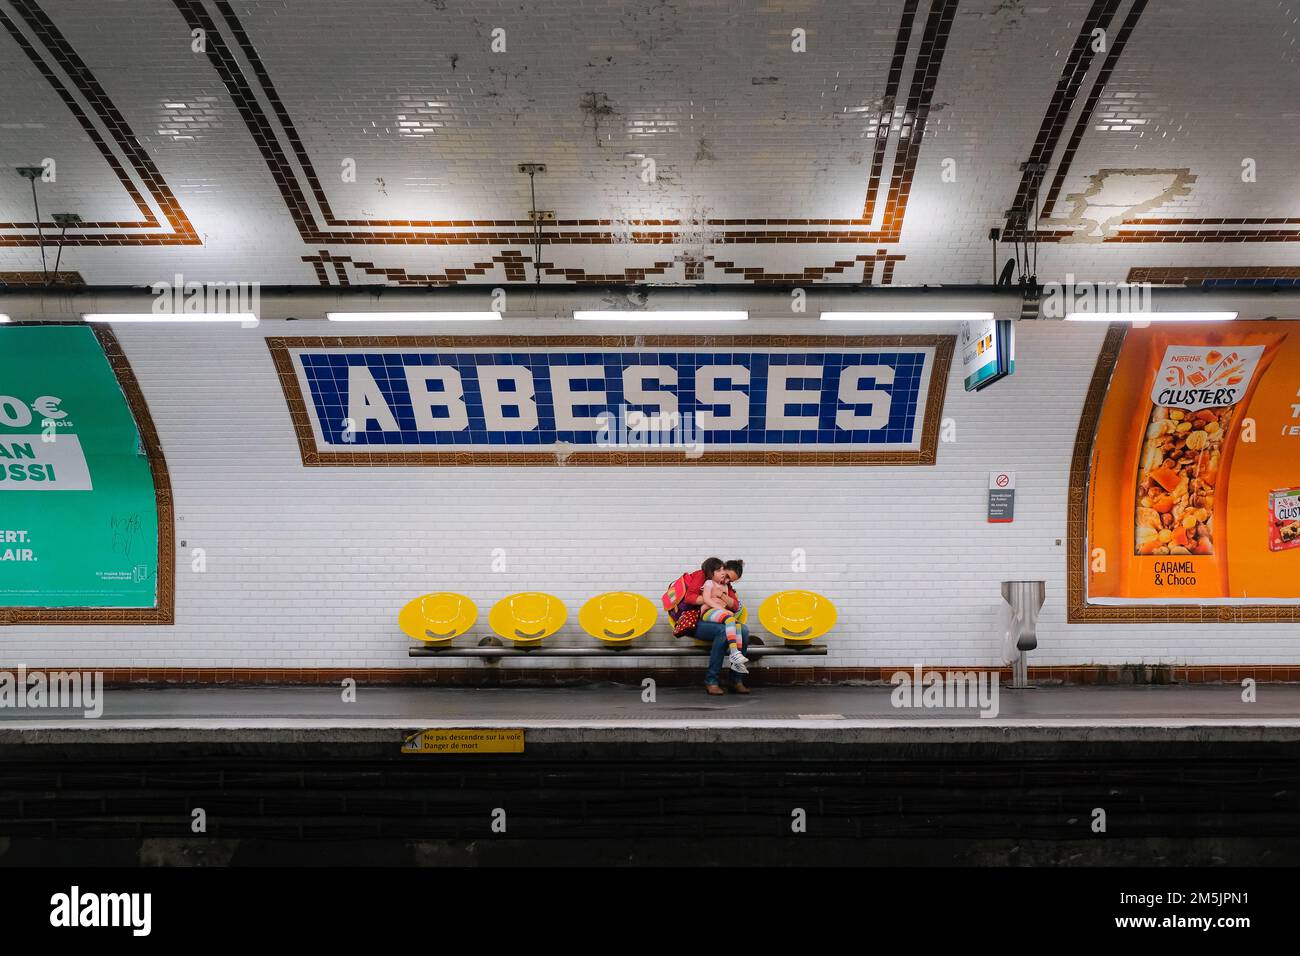 Parigi, Francia - la madre si siede sulla sedia gialla, coccola la figlia in grembo. Entrambi aspettano il prossimo treno all'interno della stazione della metropolitana Abbesses a Montmartre. Foto Stock